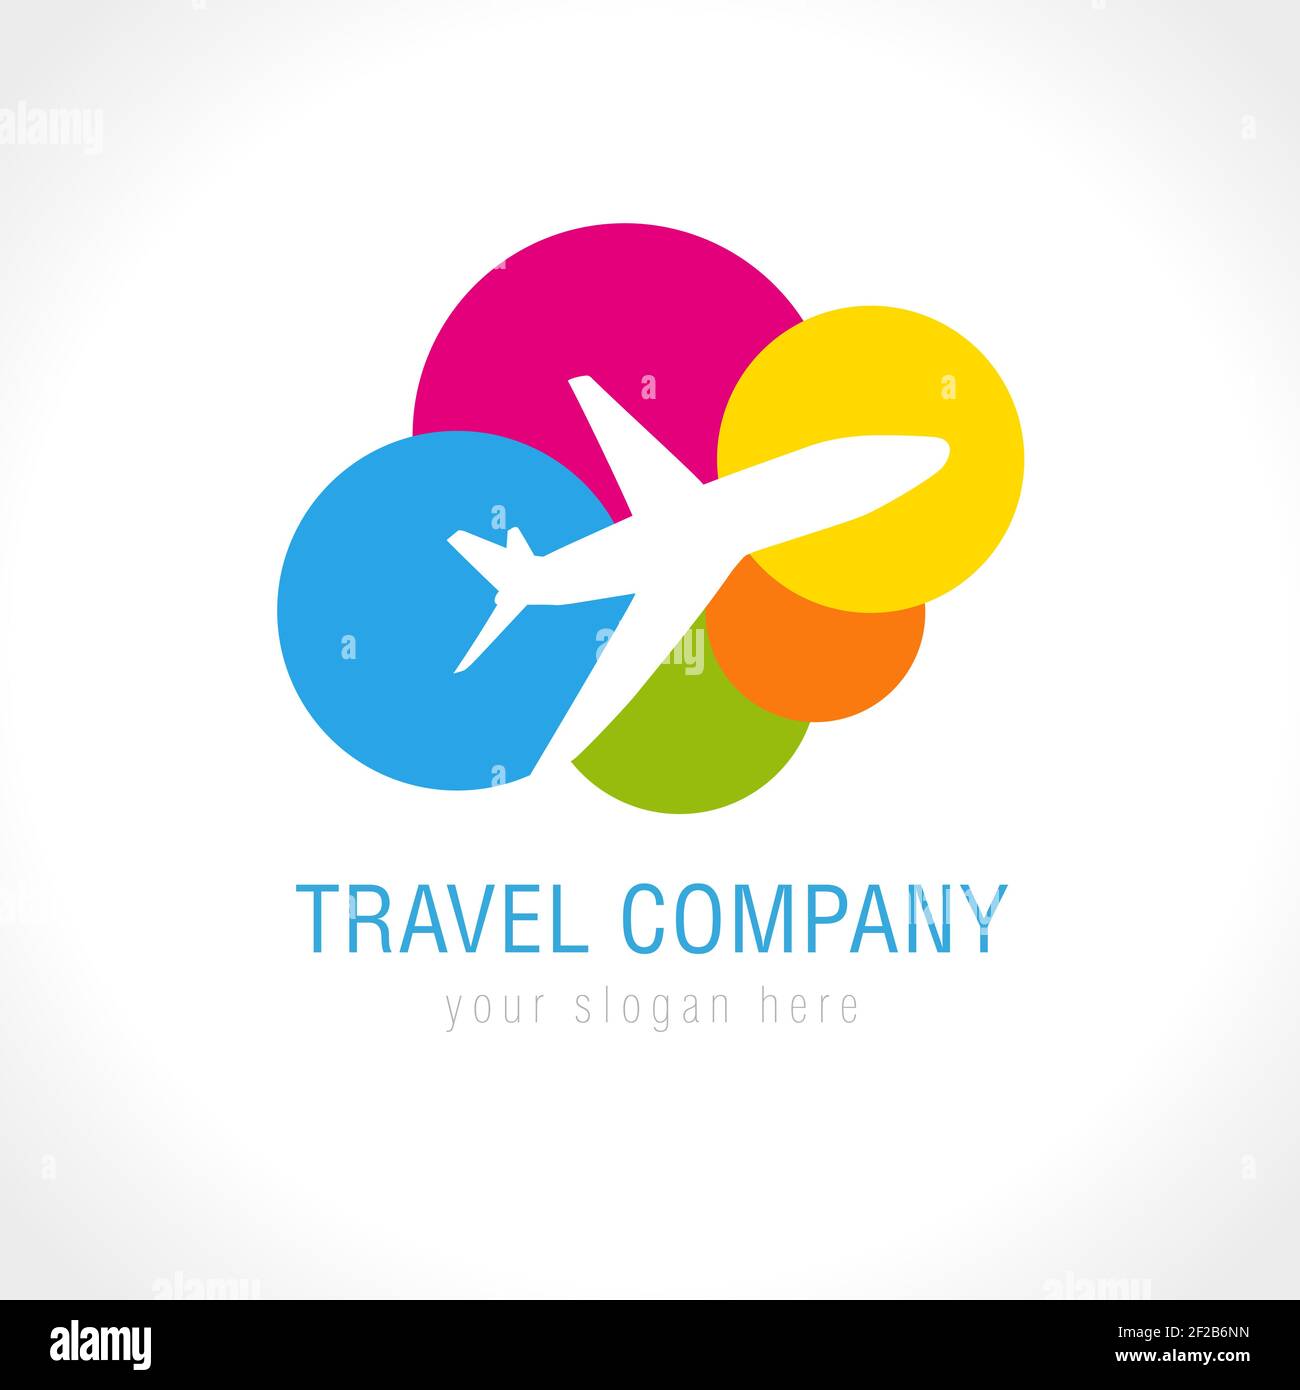 Logo des Reiseunternehmens. Welt reisen Flugzeug abstrakten Vektor-Symbol. Low-Cost-Fluggesellschaften, Ticketverkauf, Tourismusgeschäft. Fliegendes Flugzeug, farbige Wolken. Stock Vektor